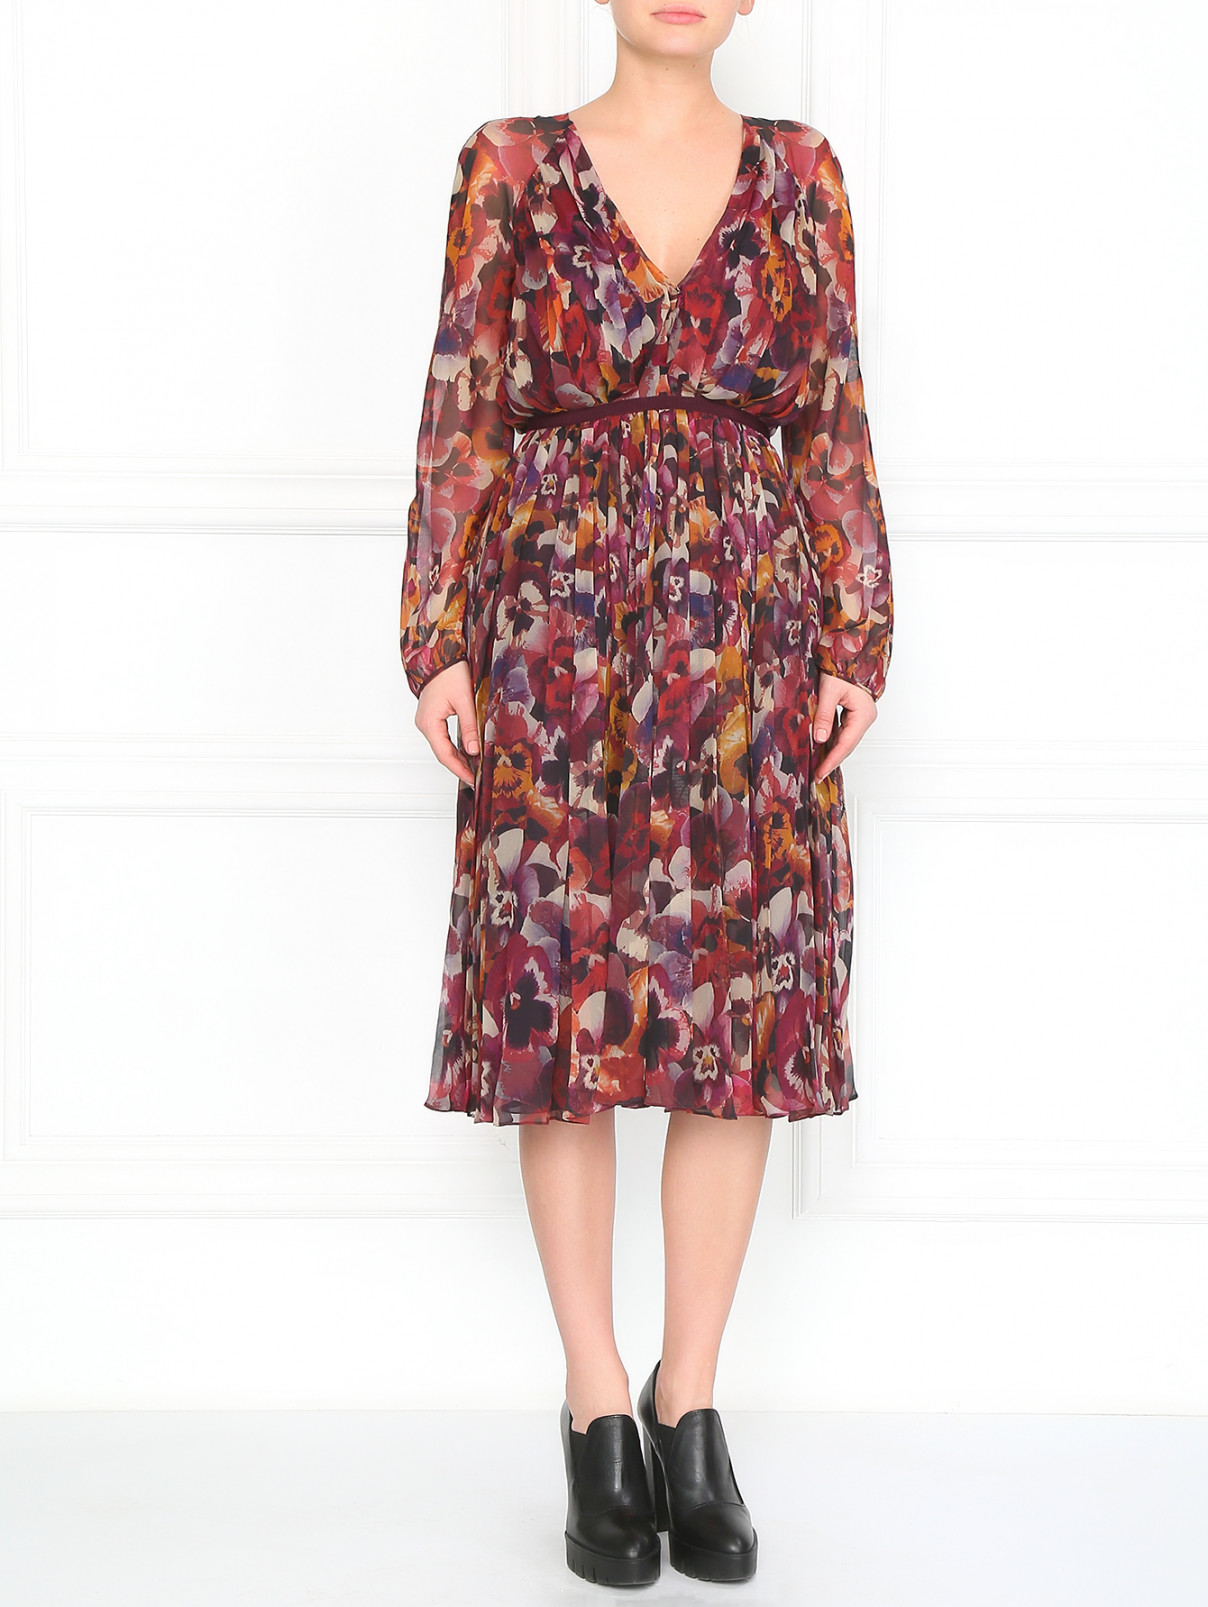 Шелковое платье Giambattista Valli  –  Модель Общий вид  – Цвет:  Фиолетовый